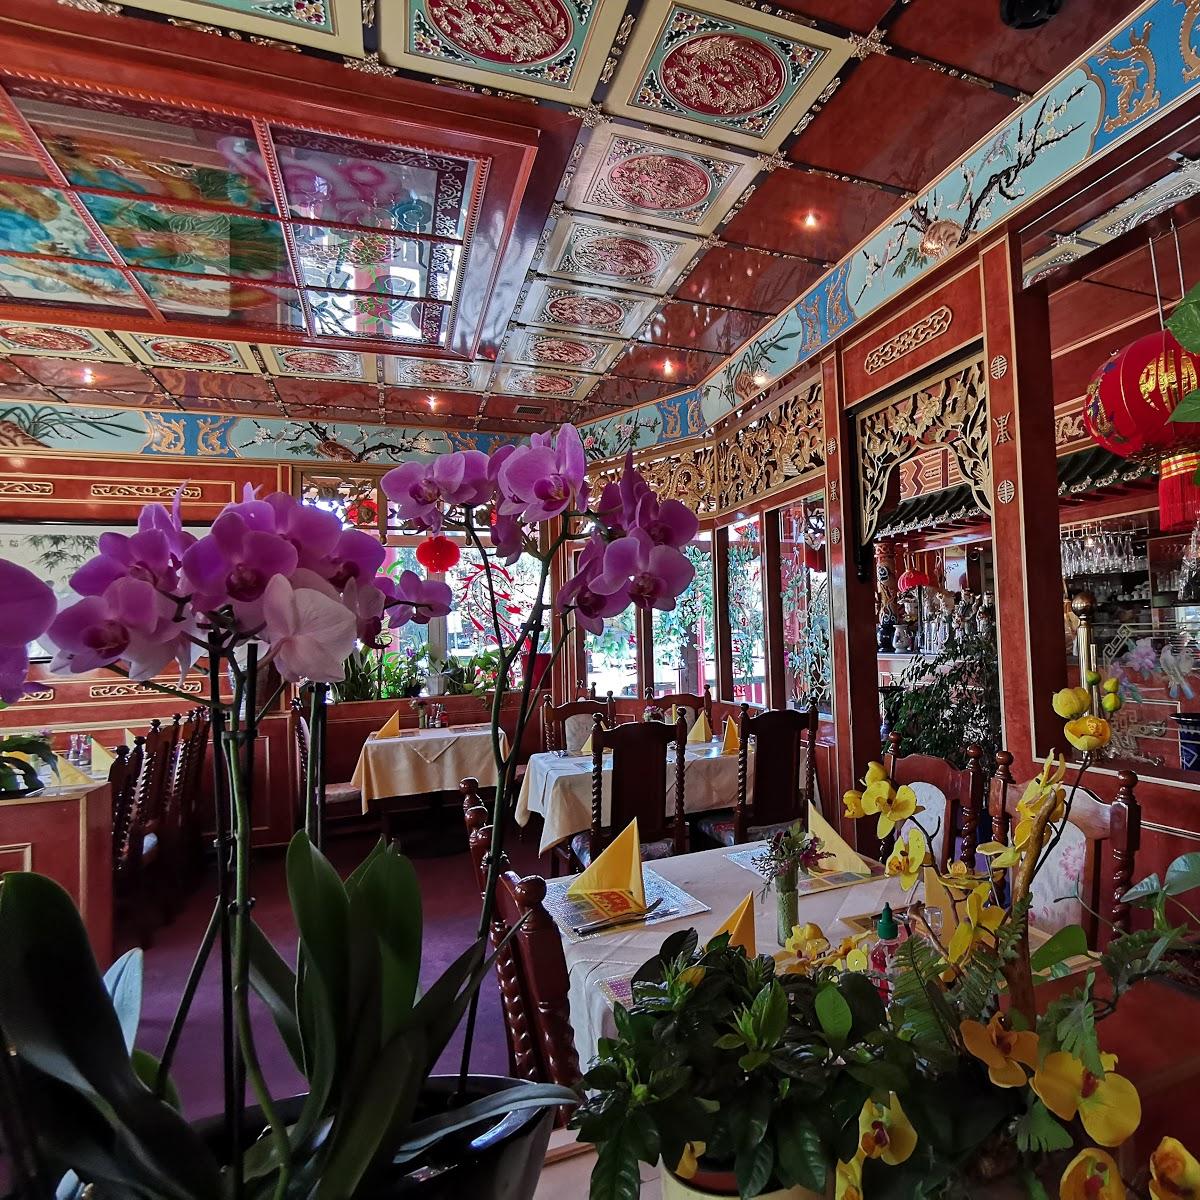 Restaurant "Chinarestaurant" in Gera